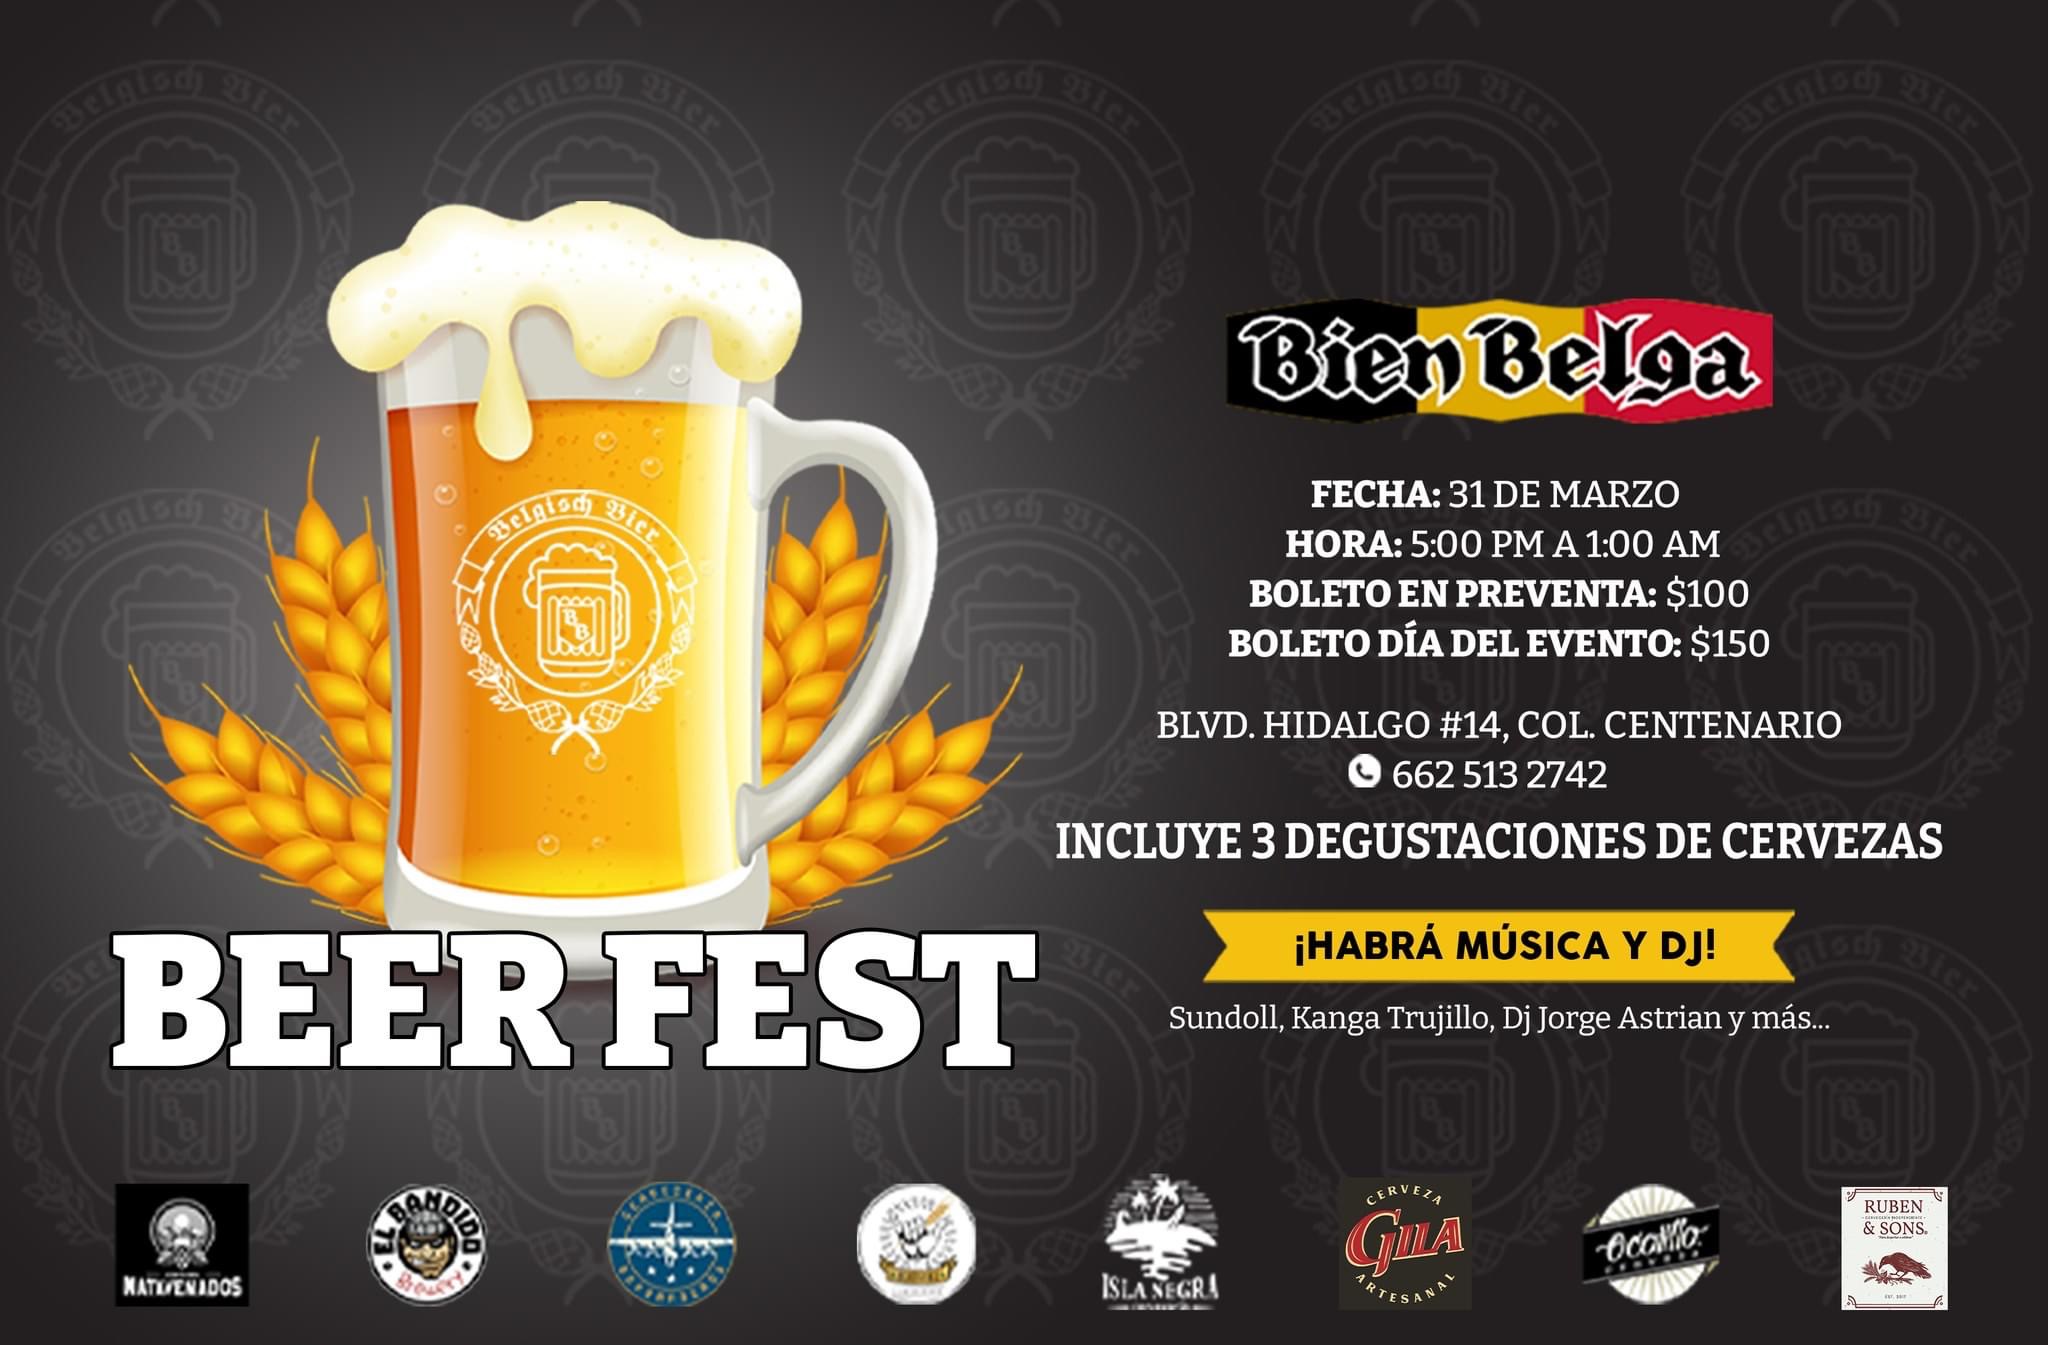 Los festivales cerveceros